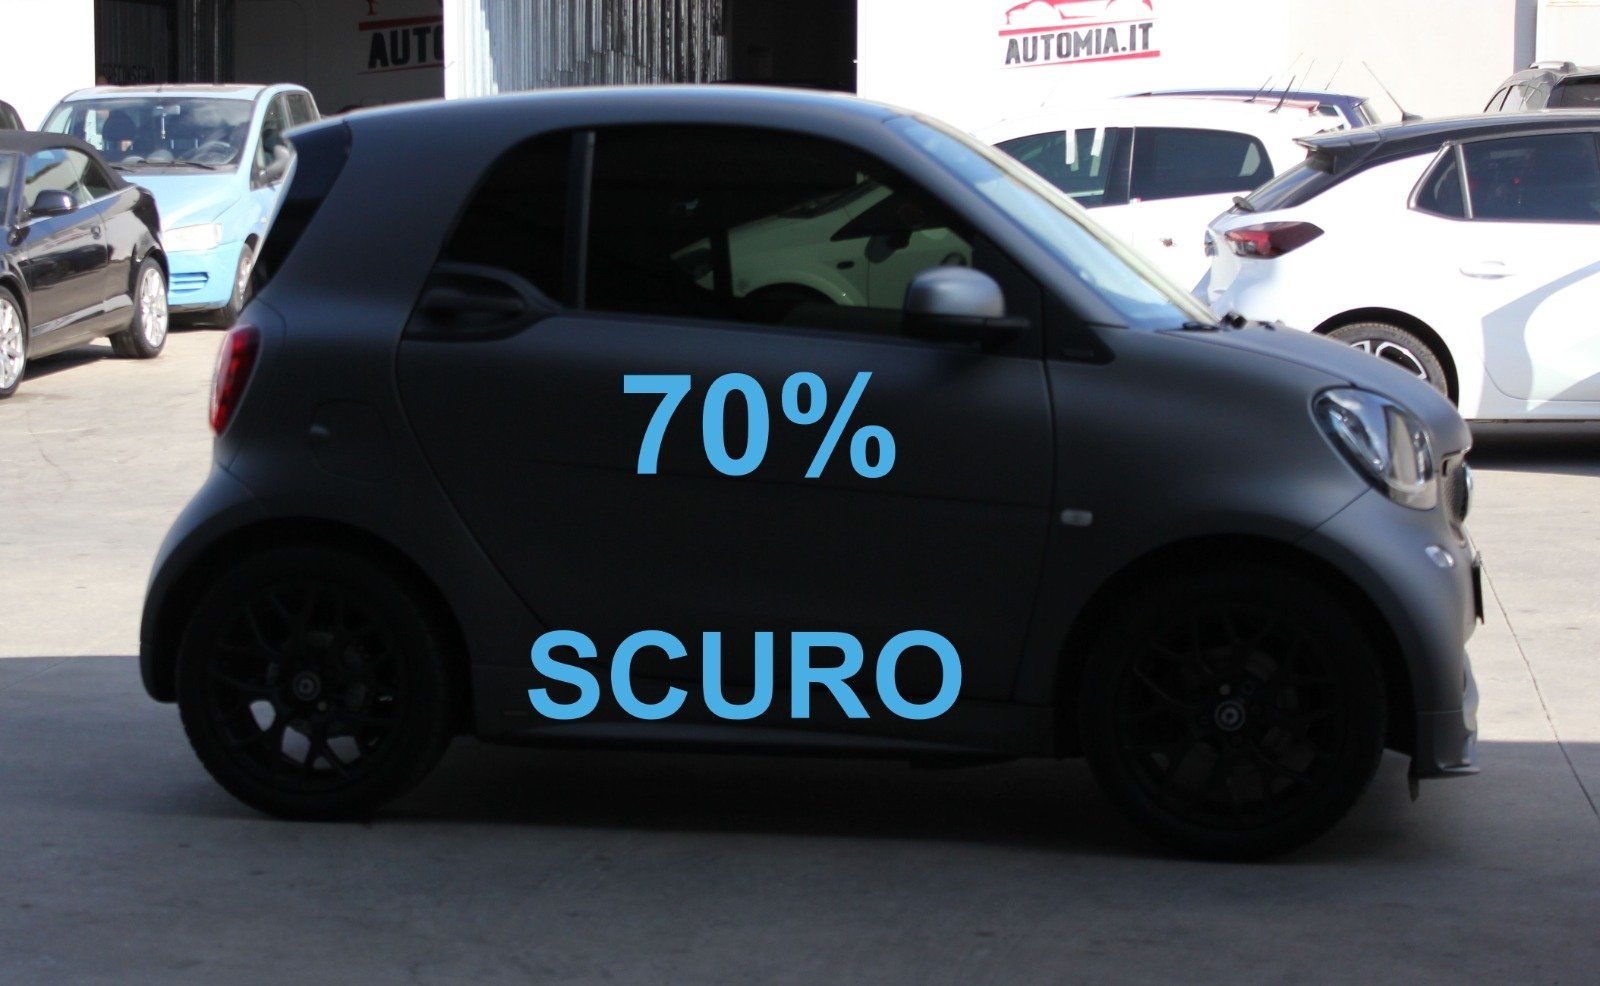 Gradazione  tonalità oscuramento vetri auto con pellicole oscuranti al 70% Smart For Two 2 posti del 2020